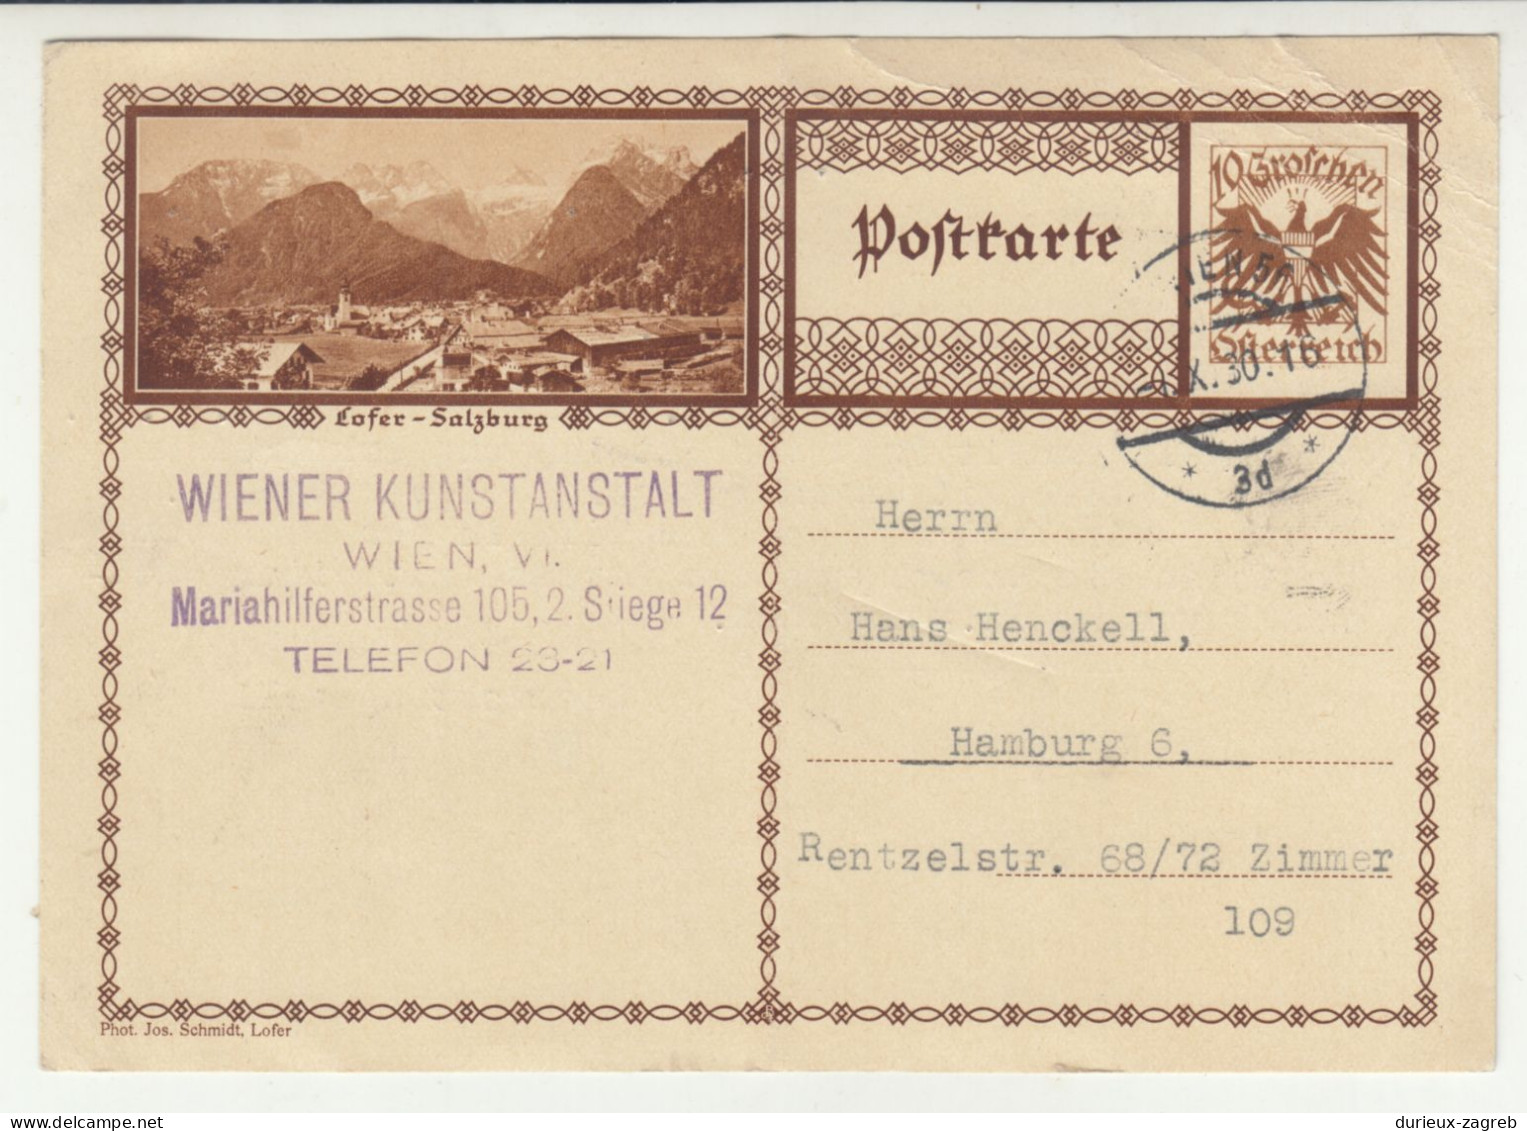 Lofer-Salzburg Illustrated Postal Stationery Postcard Posted 1930 B240503 - Cartes Postales